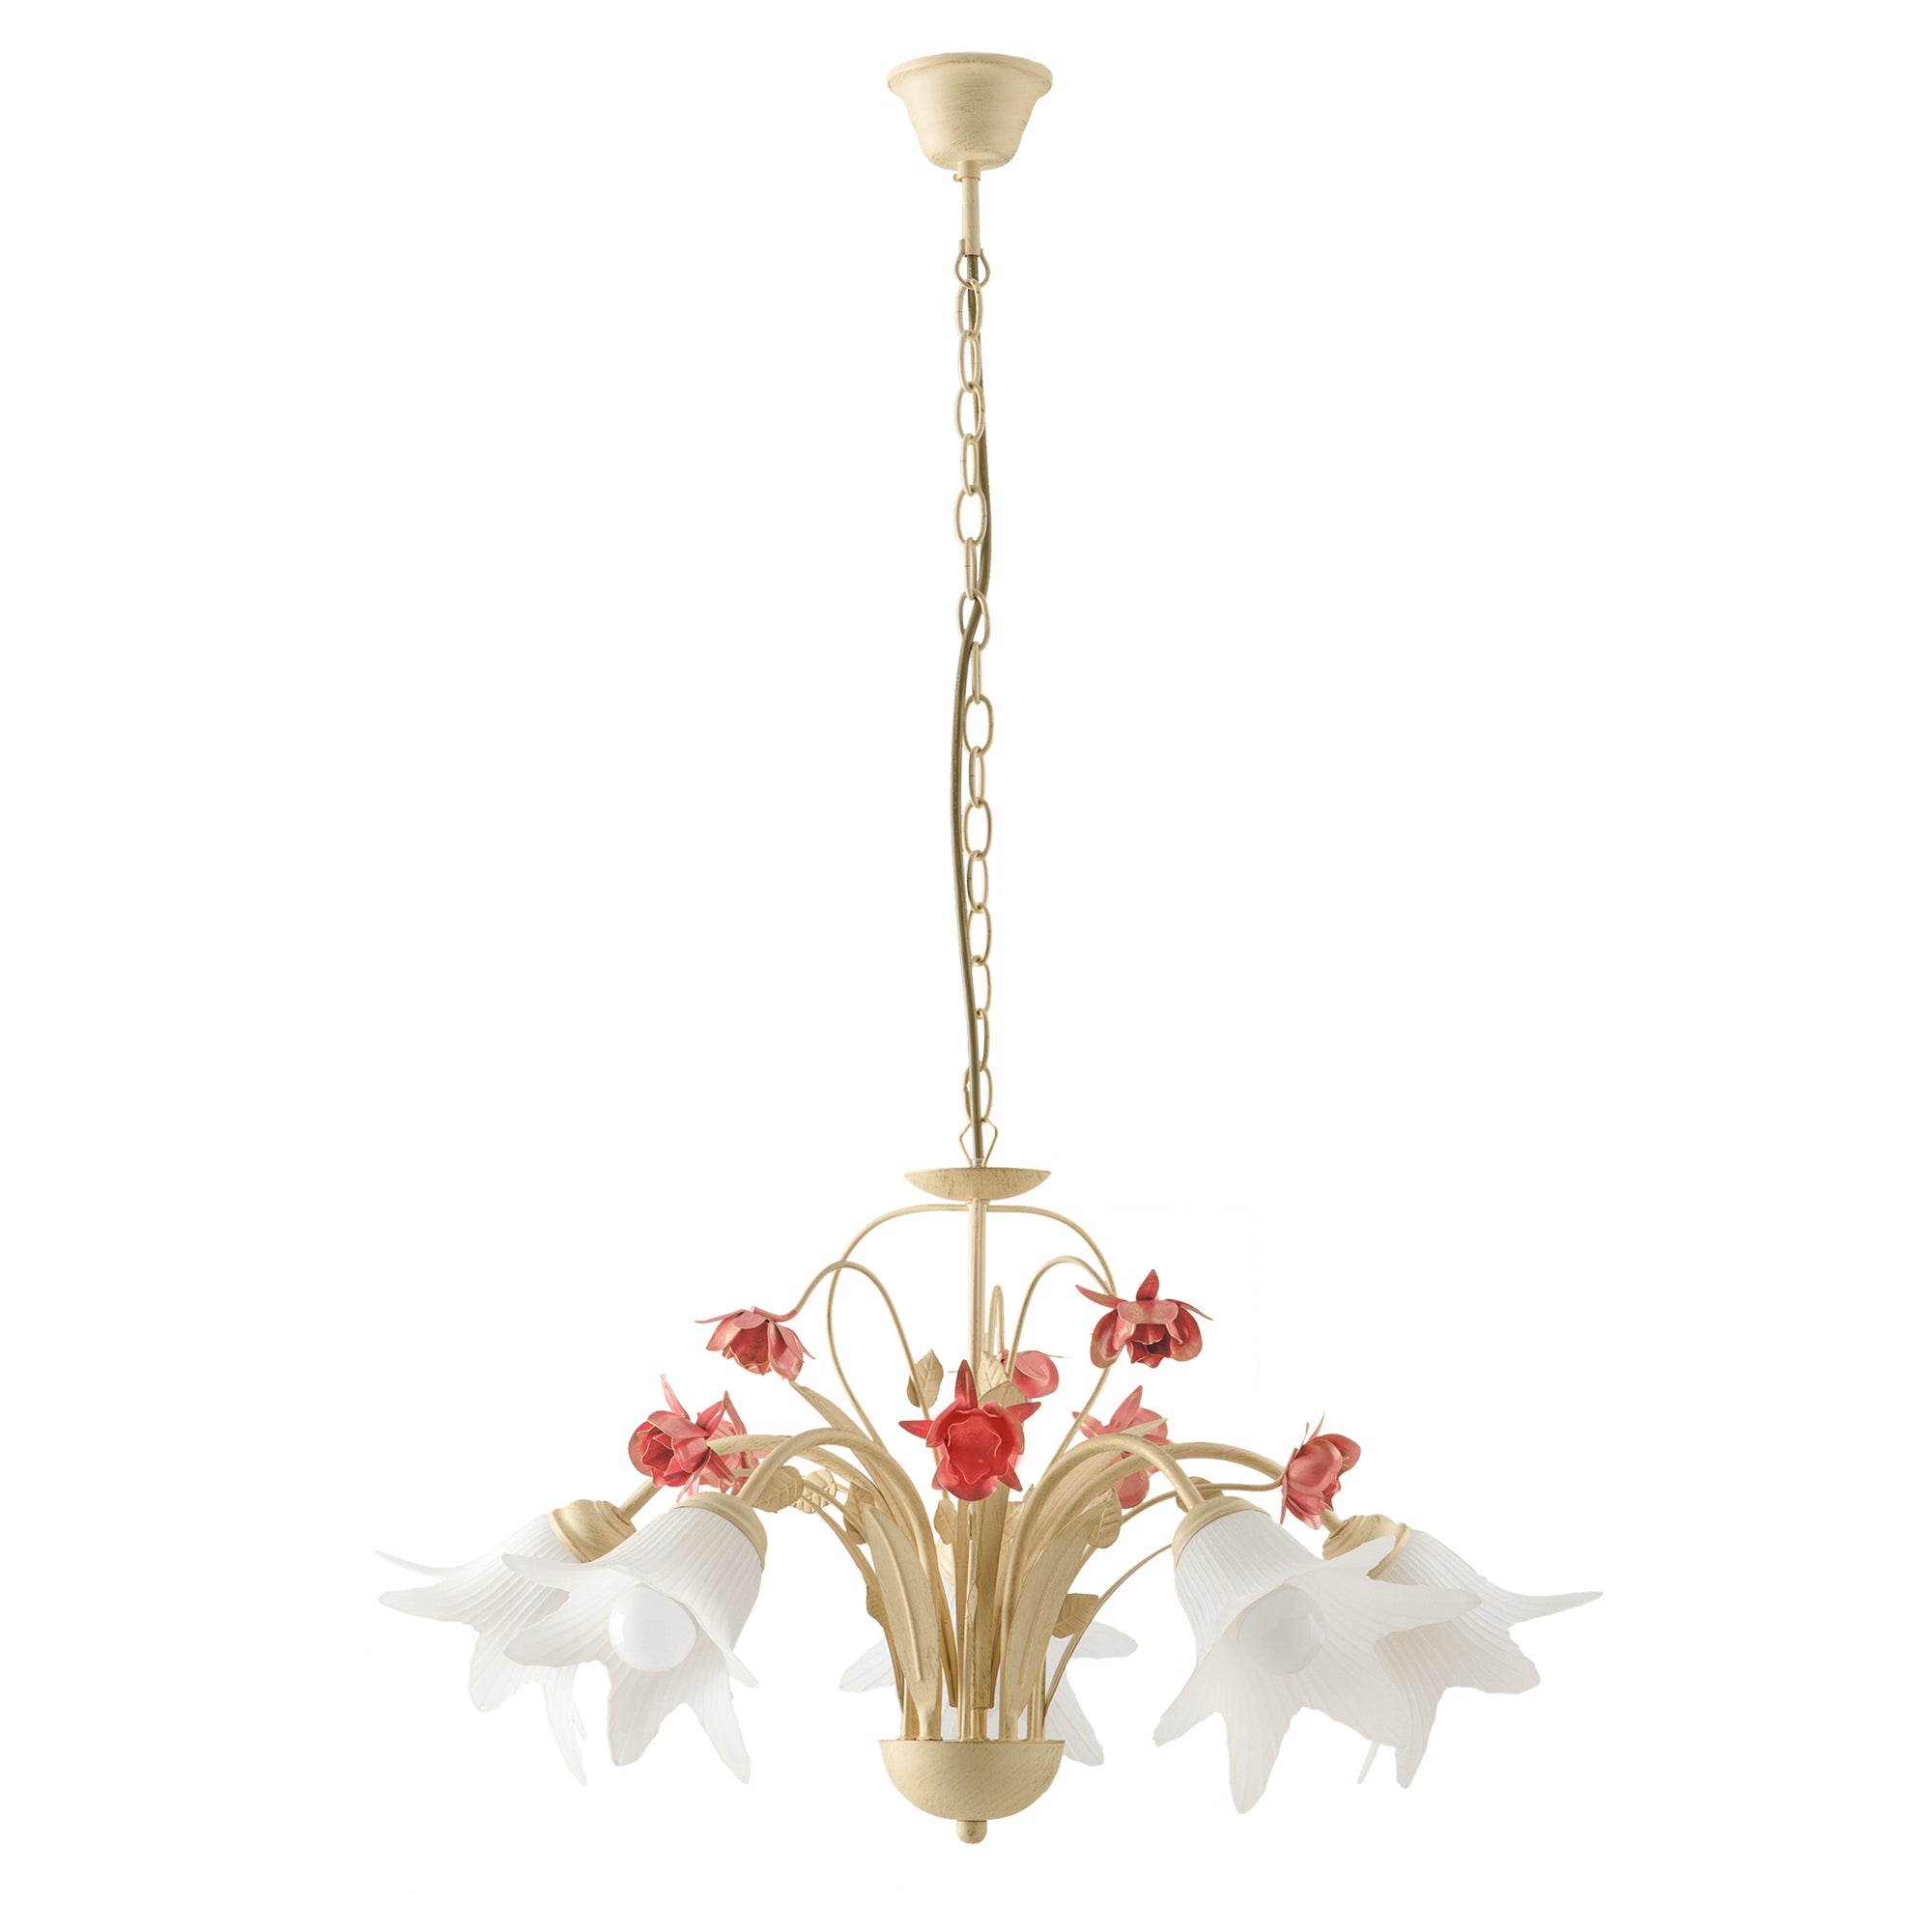 Lámpara de suspensión ROSE en metal decorado a mano con detalles florales y difusor de cristal